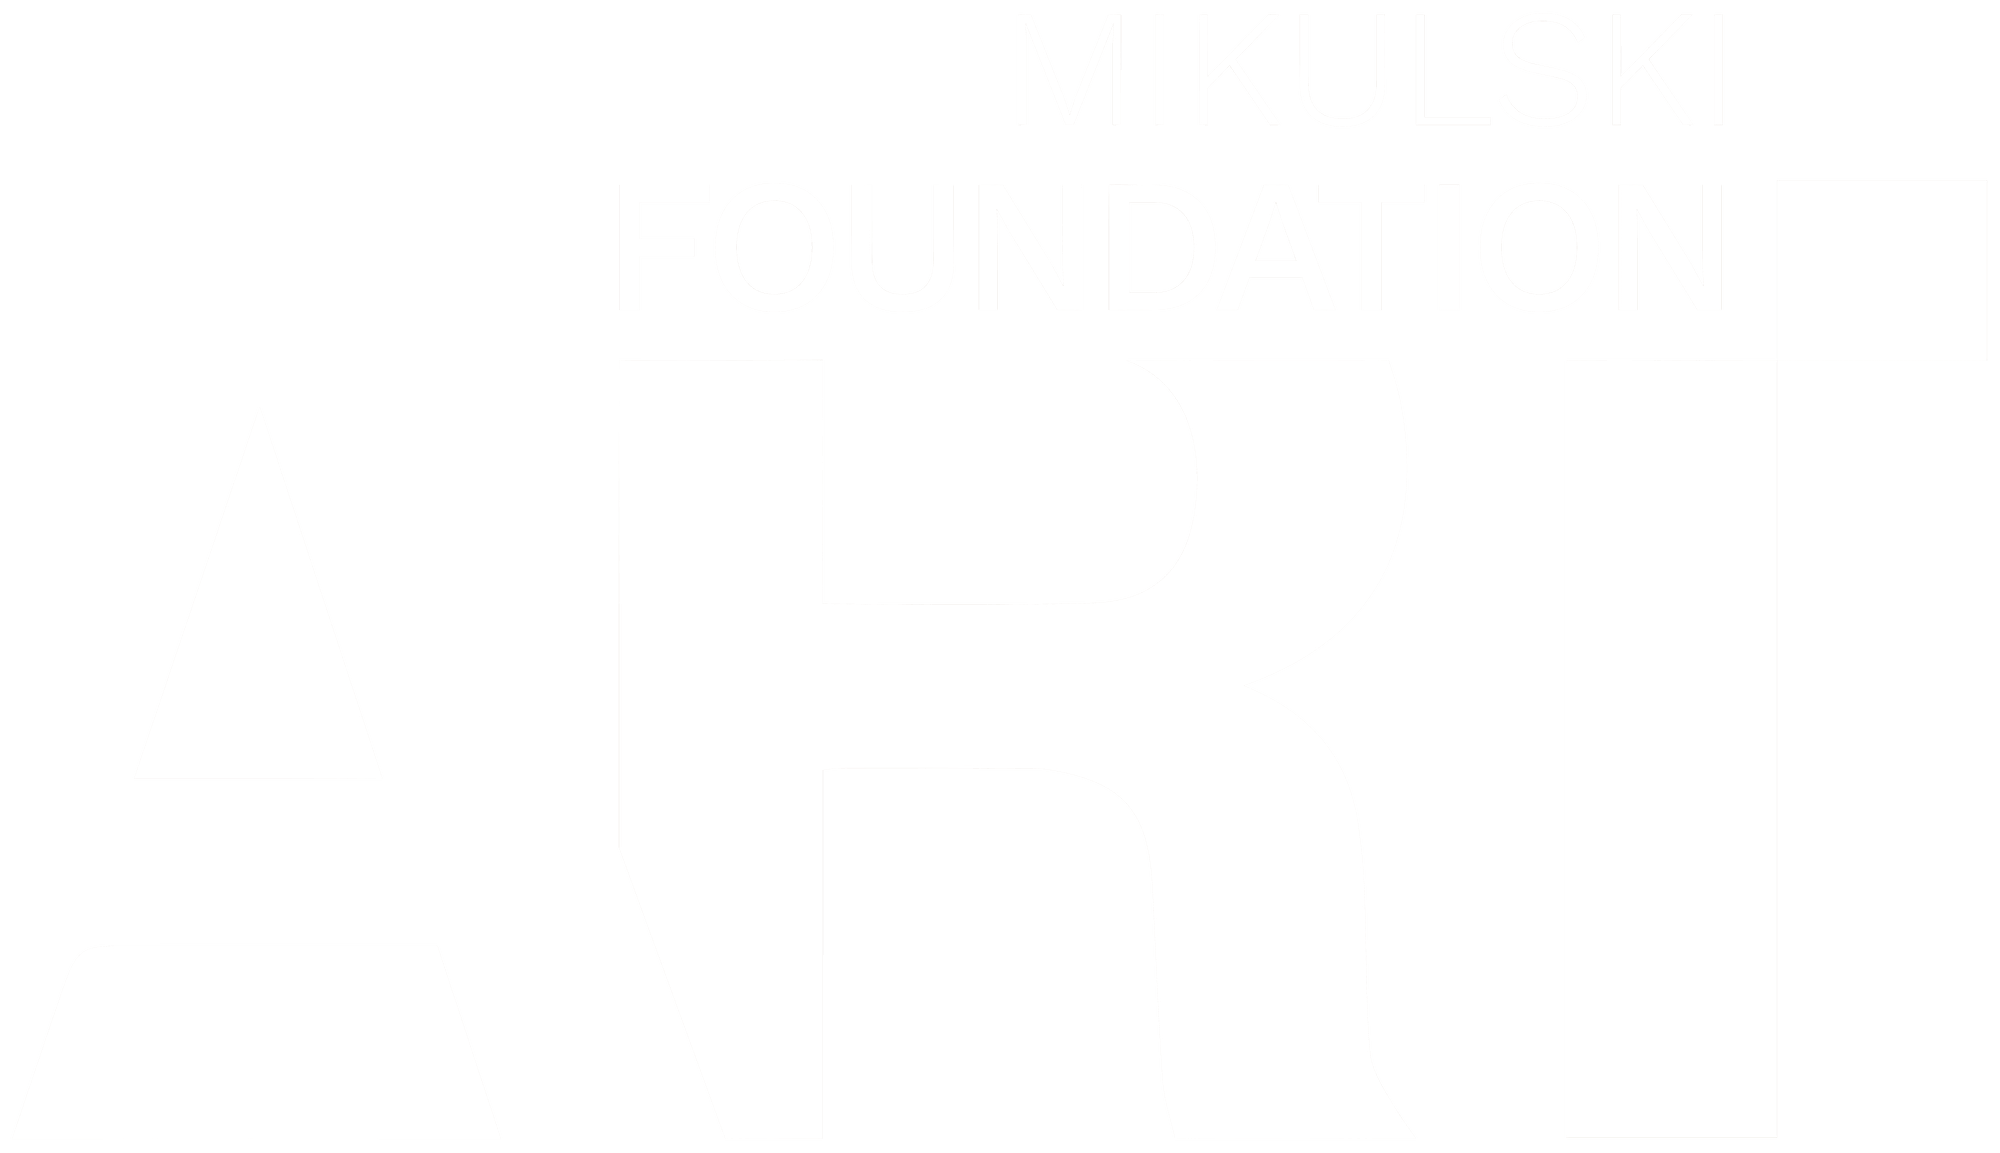 Fundacja MikulskiArt